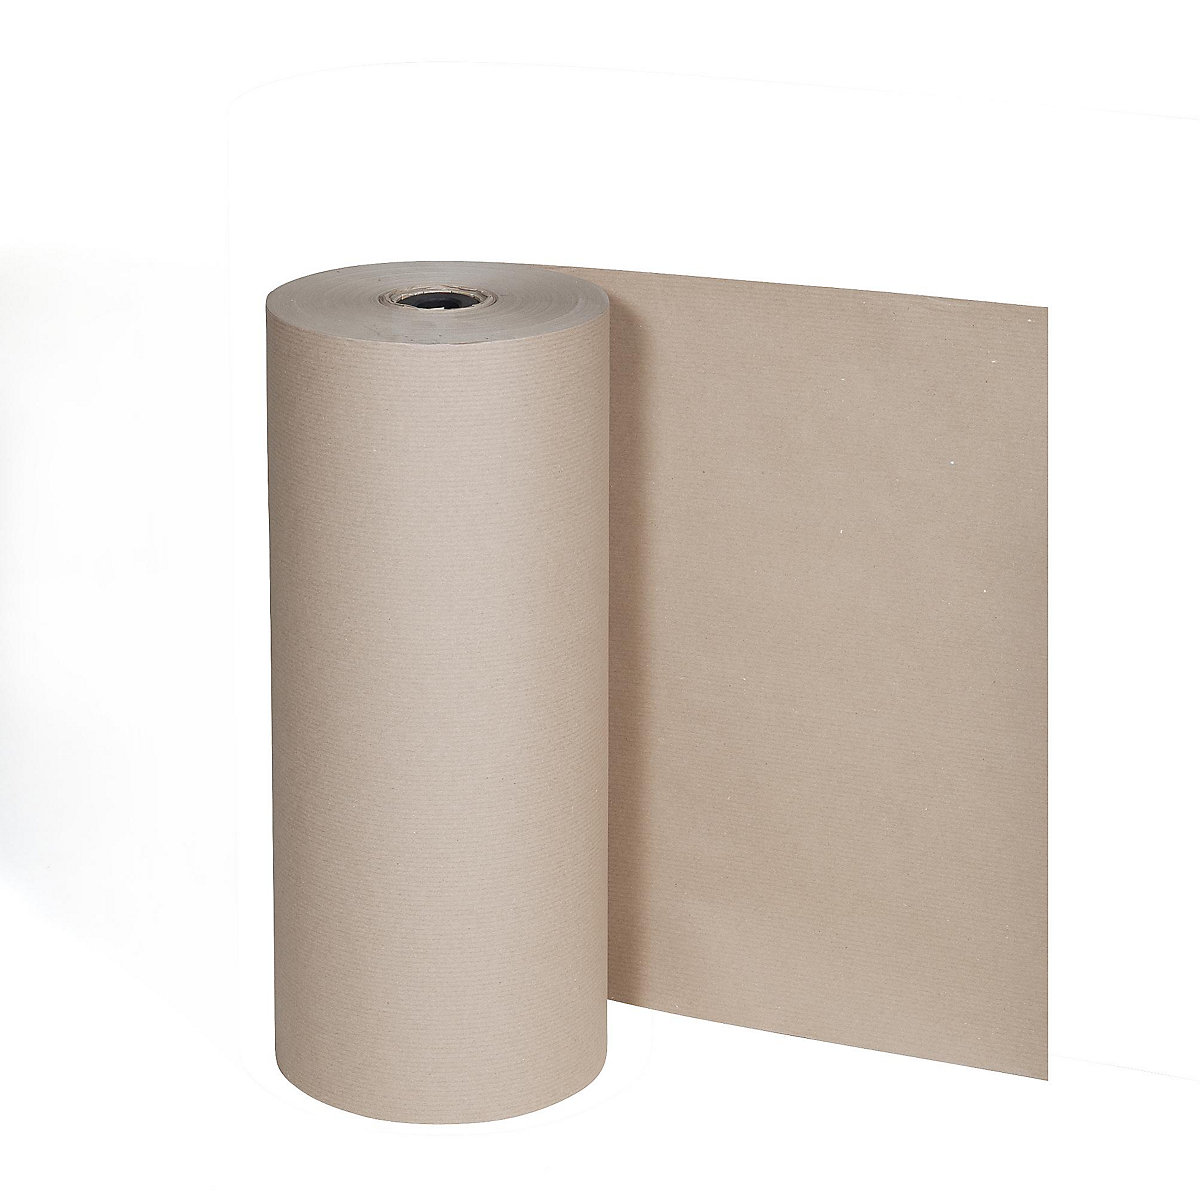 Hârtie pentru ambalat, 80 g/m², rolă mare pentru stativ vertical, 1250 mm lățime-1